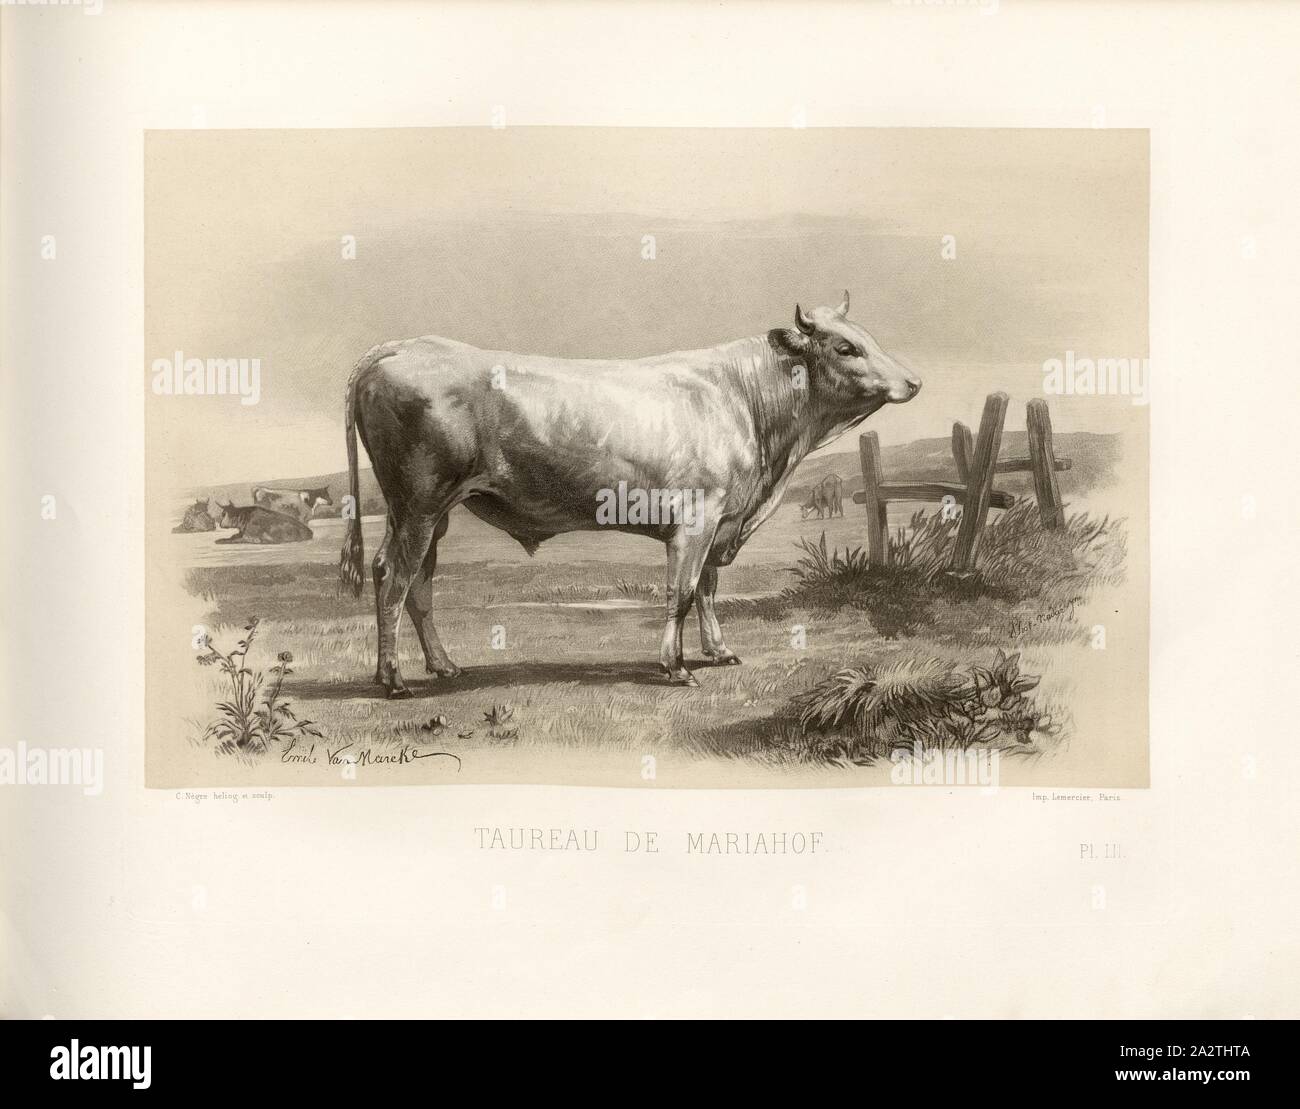 Mariahof's bull, Austrian cattle breed, bull, signed: Emile Van Marcke; C. Nègre heliog., et sculp, Pl. LII, p. 121, Marcke, Emile van; Nègre, Charles (heliog. et sc.), Emile Baudement: Les races bovines au concours universel agricole de Paris en 1856: études zootechniques. Bd. 2. Paris: Imprimerie Impériale, MDCCCLXI [1861 Stock Photo